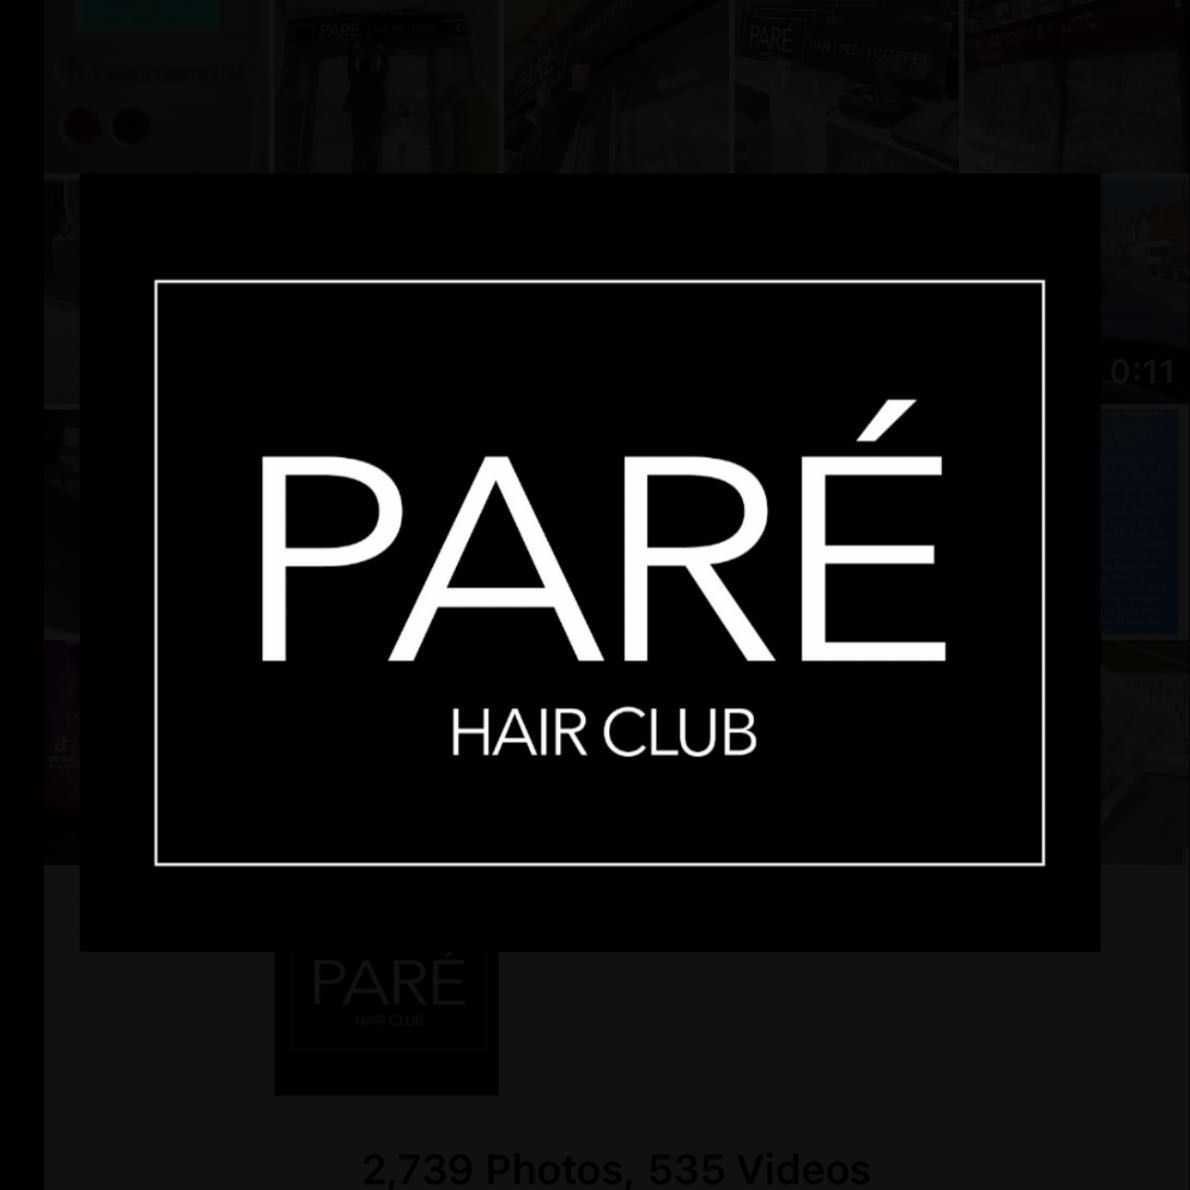 Paré Hair Club, Brindley House, 101 Newhall St, B3 1LH, Birmingham